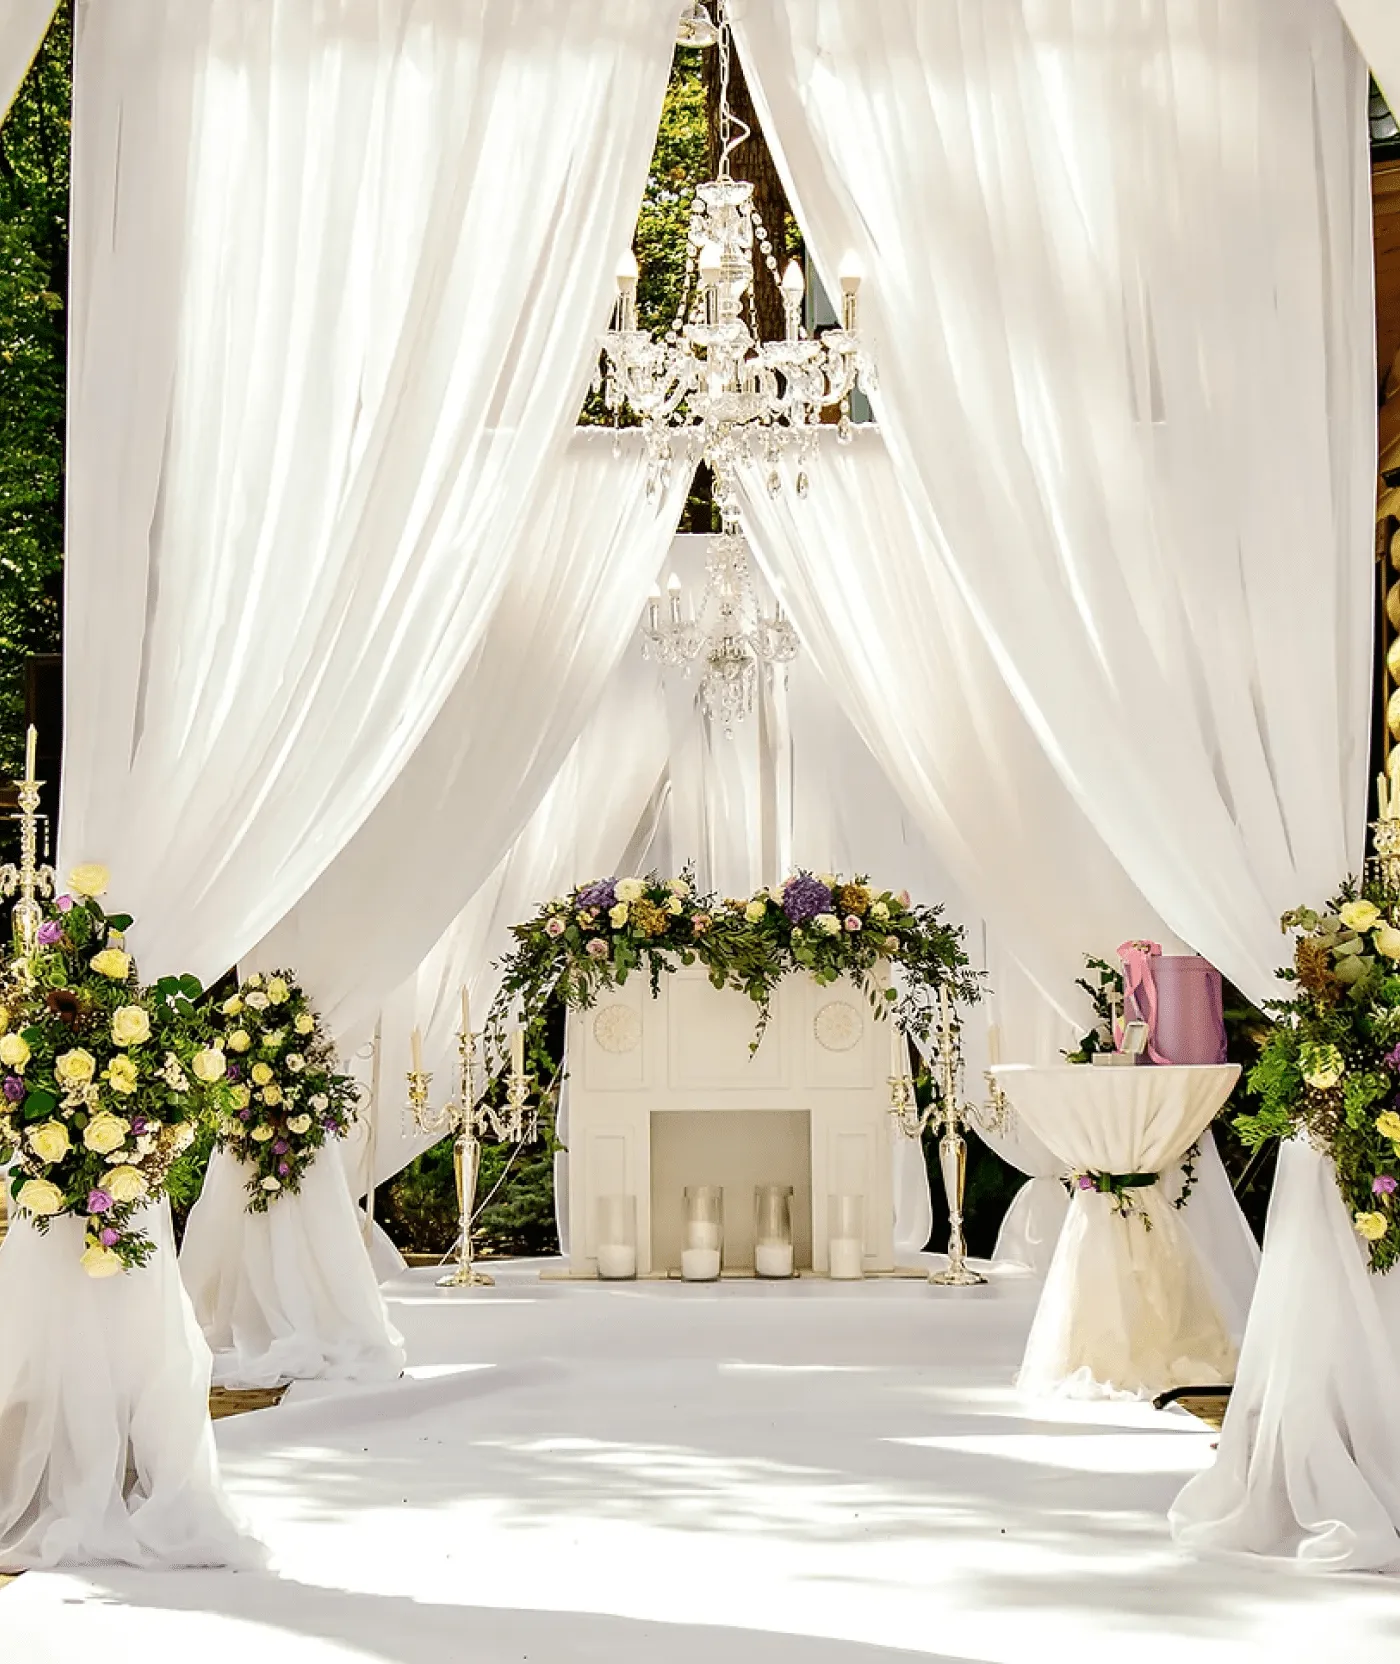 Tente blanche aménagé pour la reception d'un mariage avec des fleurs et des bougies